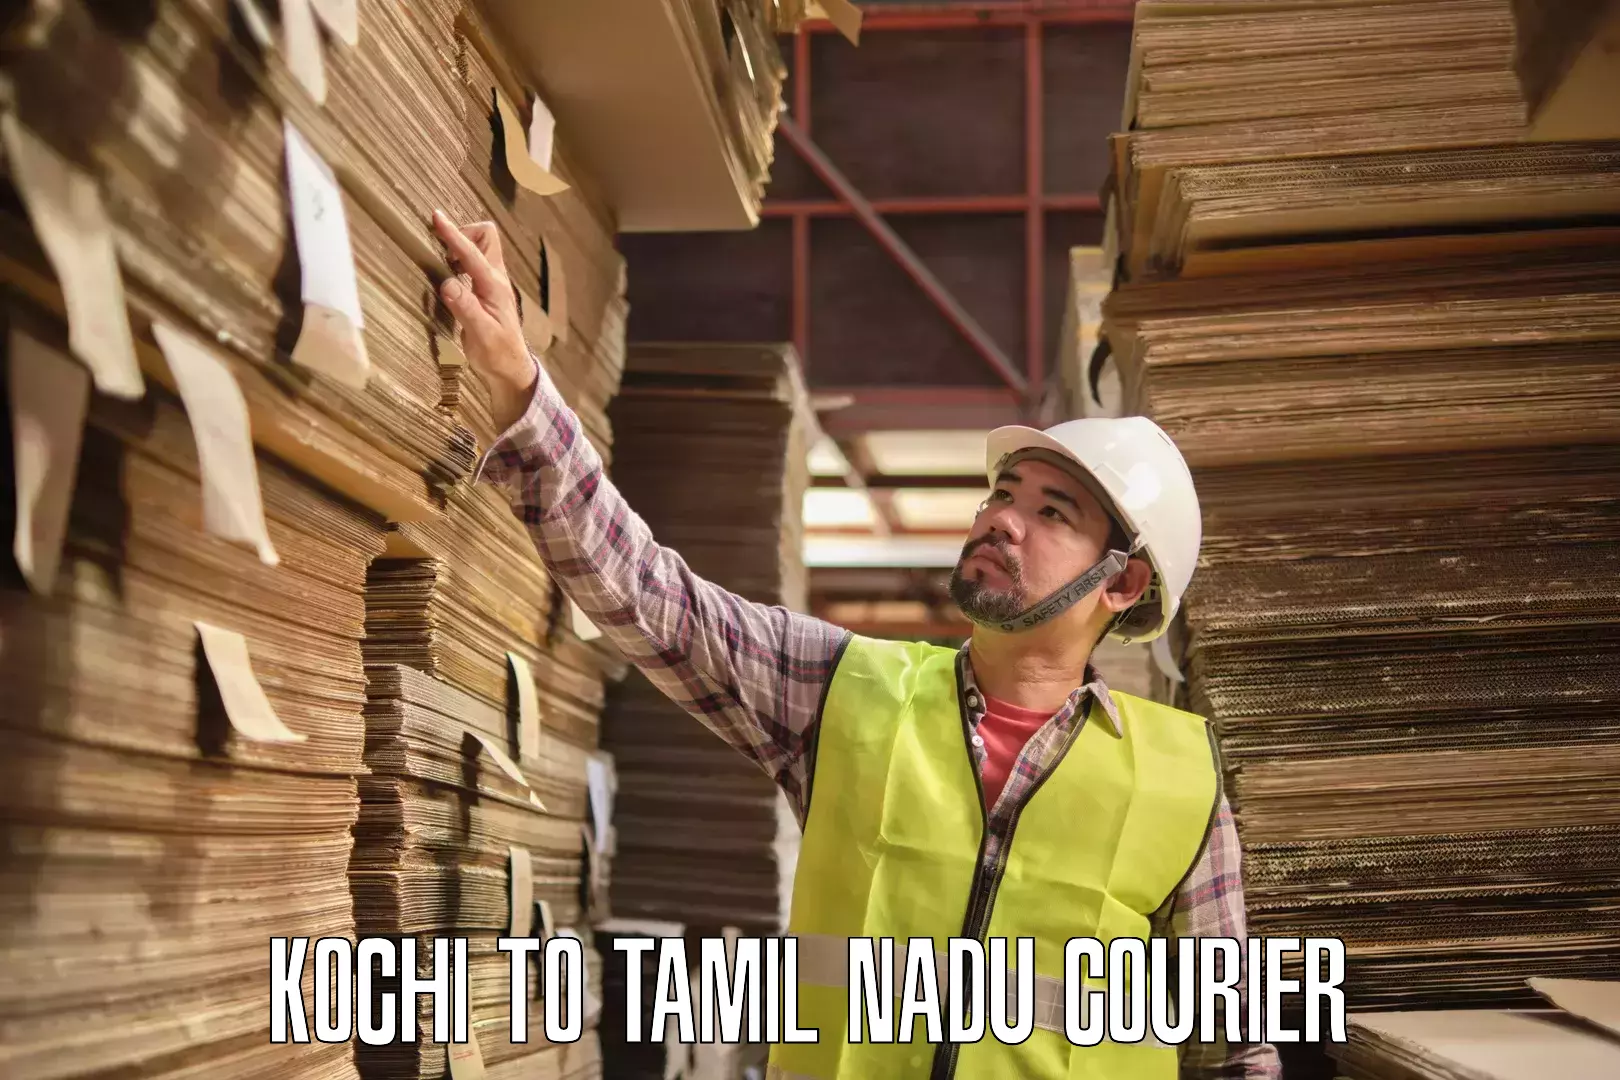 Courier service innovation Kochi to Tamil Nadu